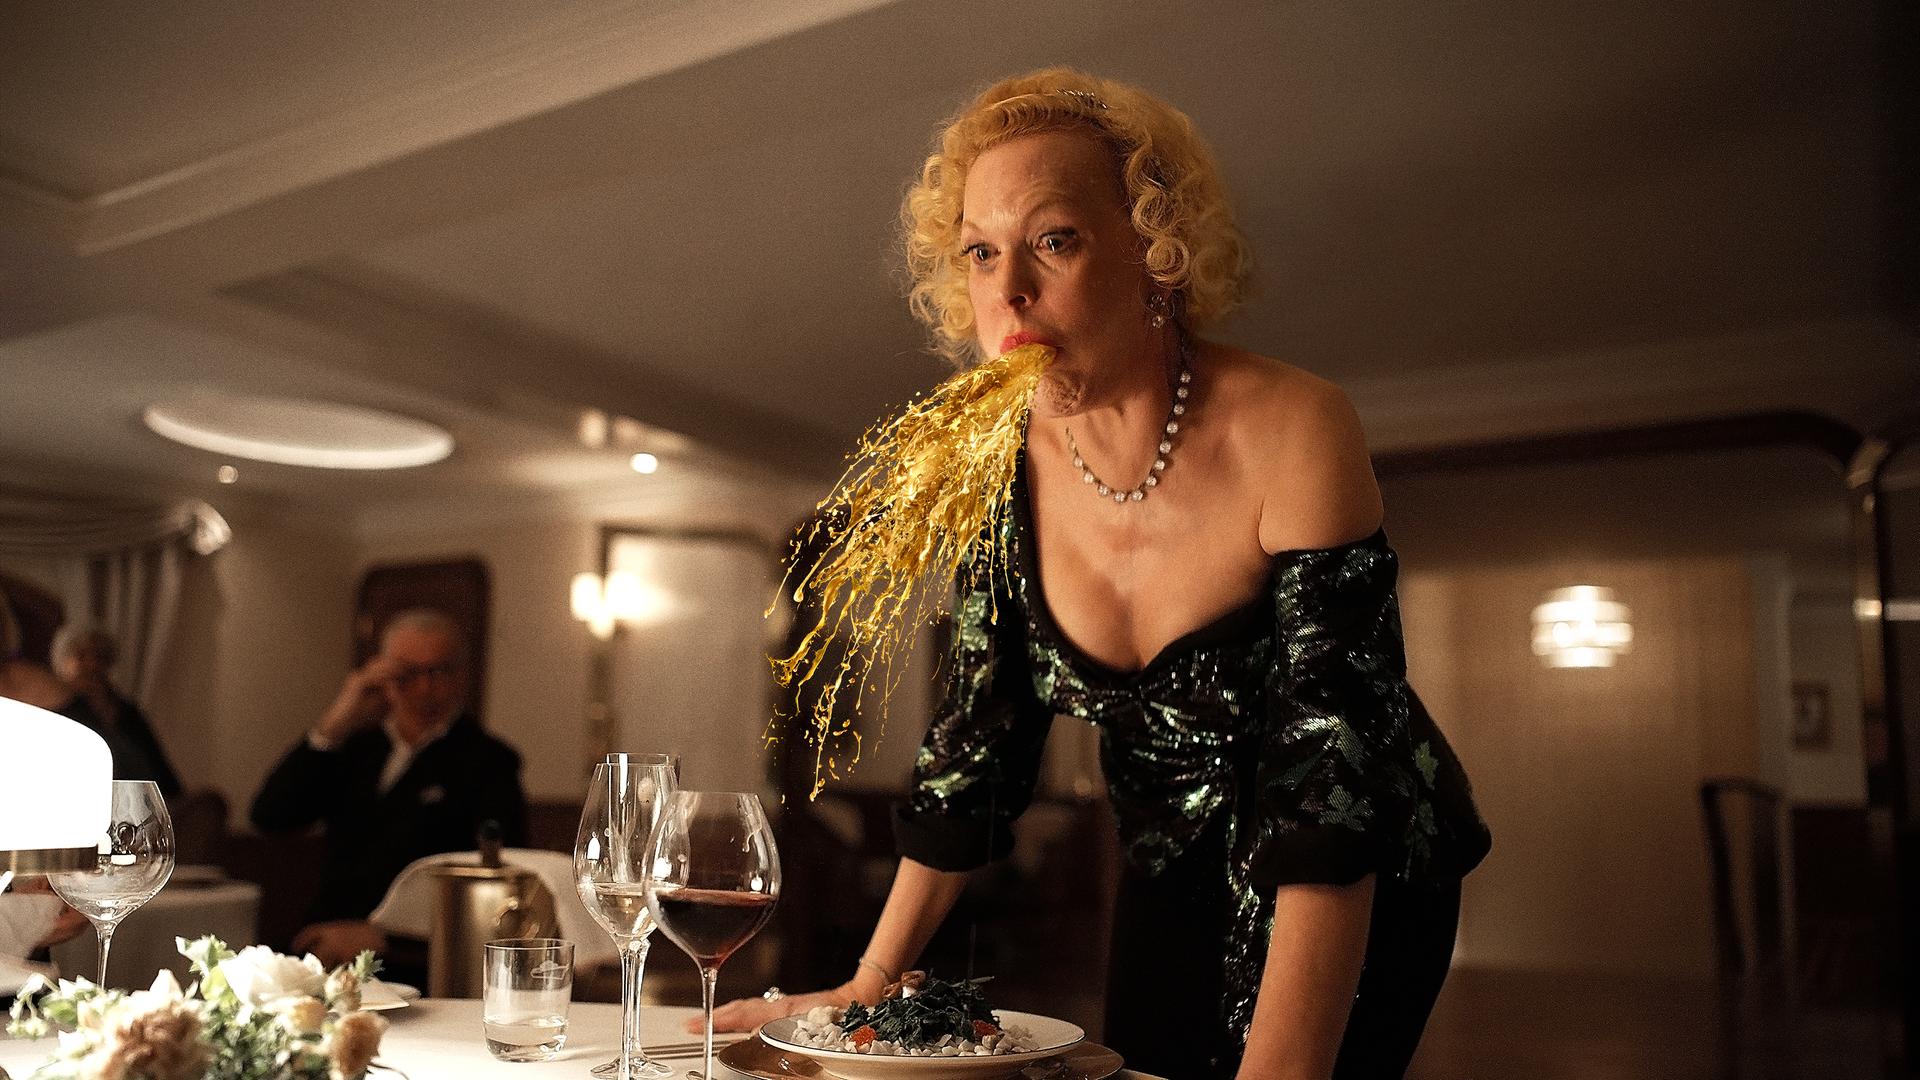 Der Film "Triangle of Sadness", bei den Oscars 2023 nominiert: Eine Frau speiht eine Art Goldregen an einem festlichen gedeckten Tisch.